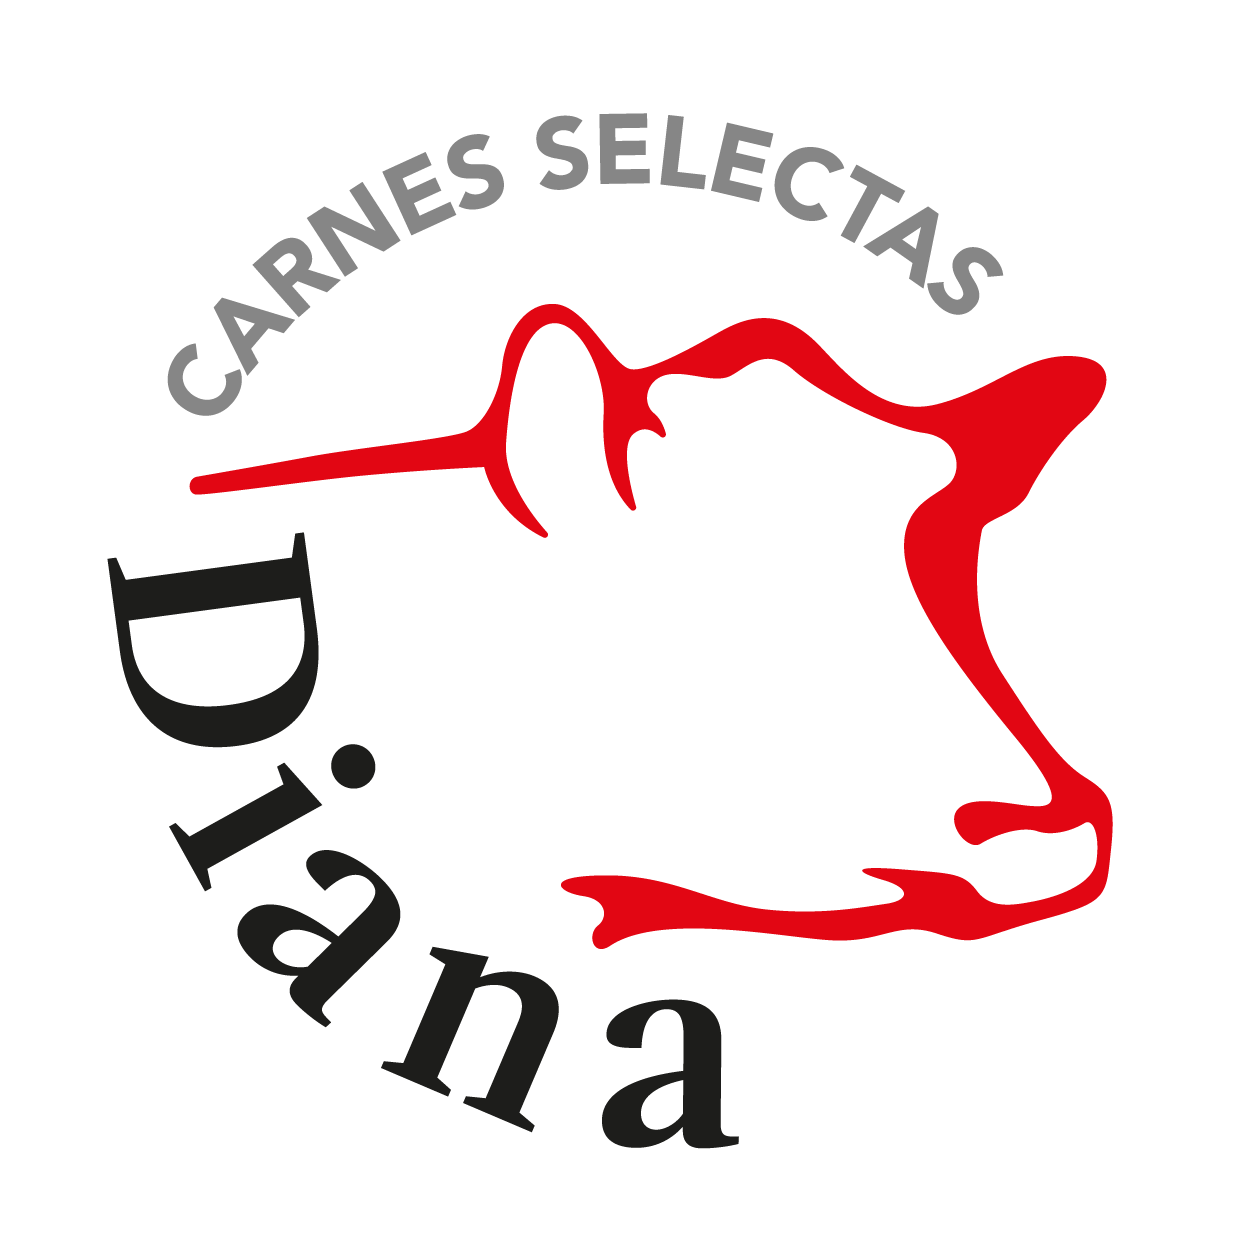 Carnes Selectas Diana